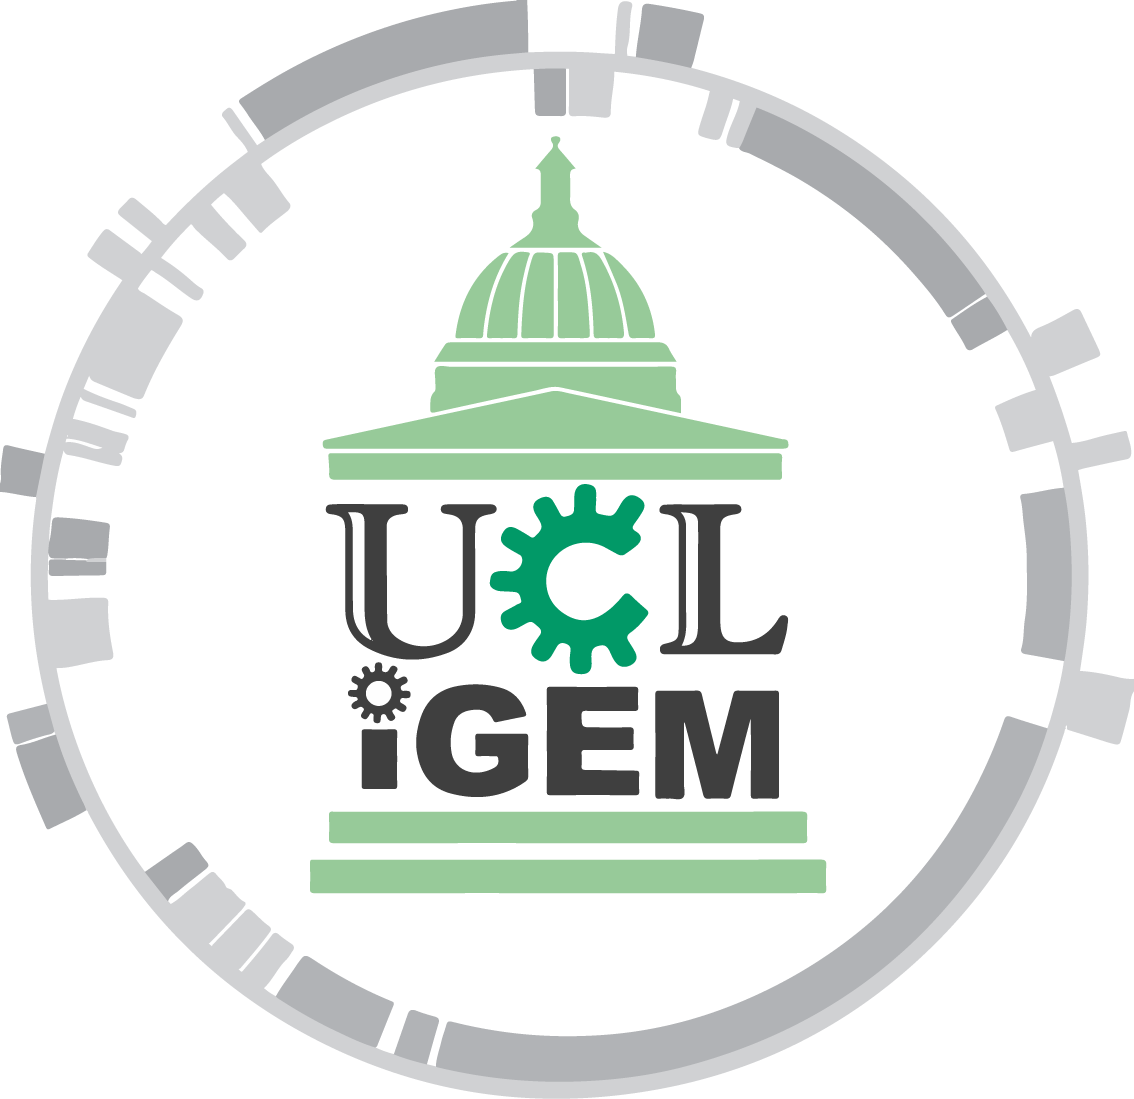 UCL iGEM logo.png